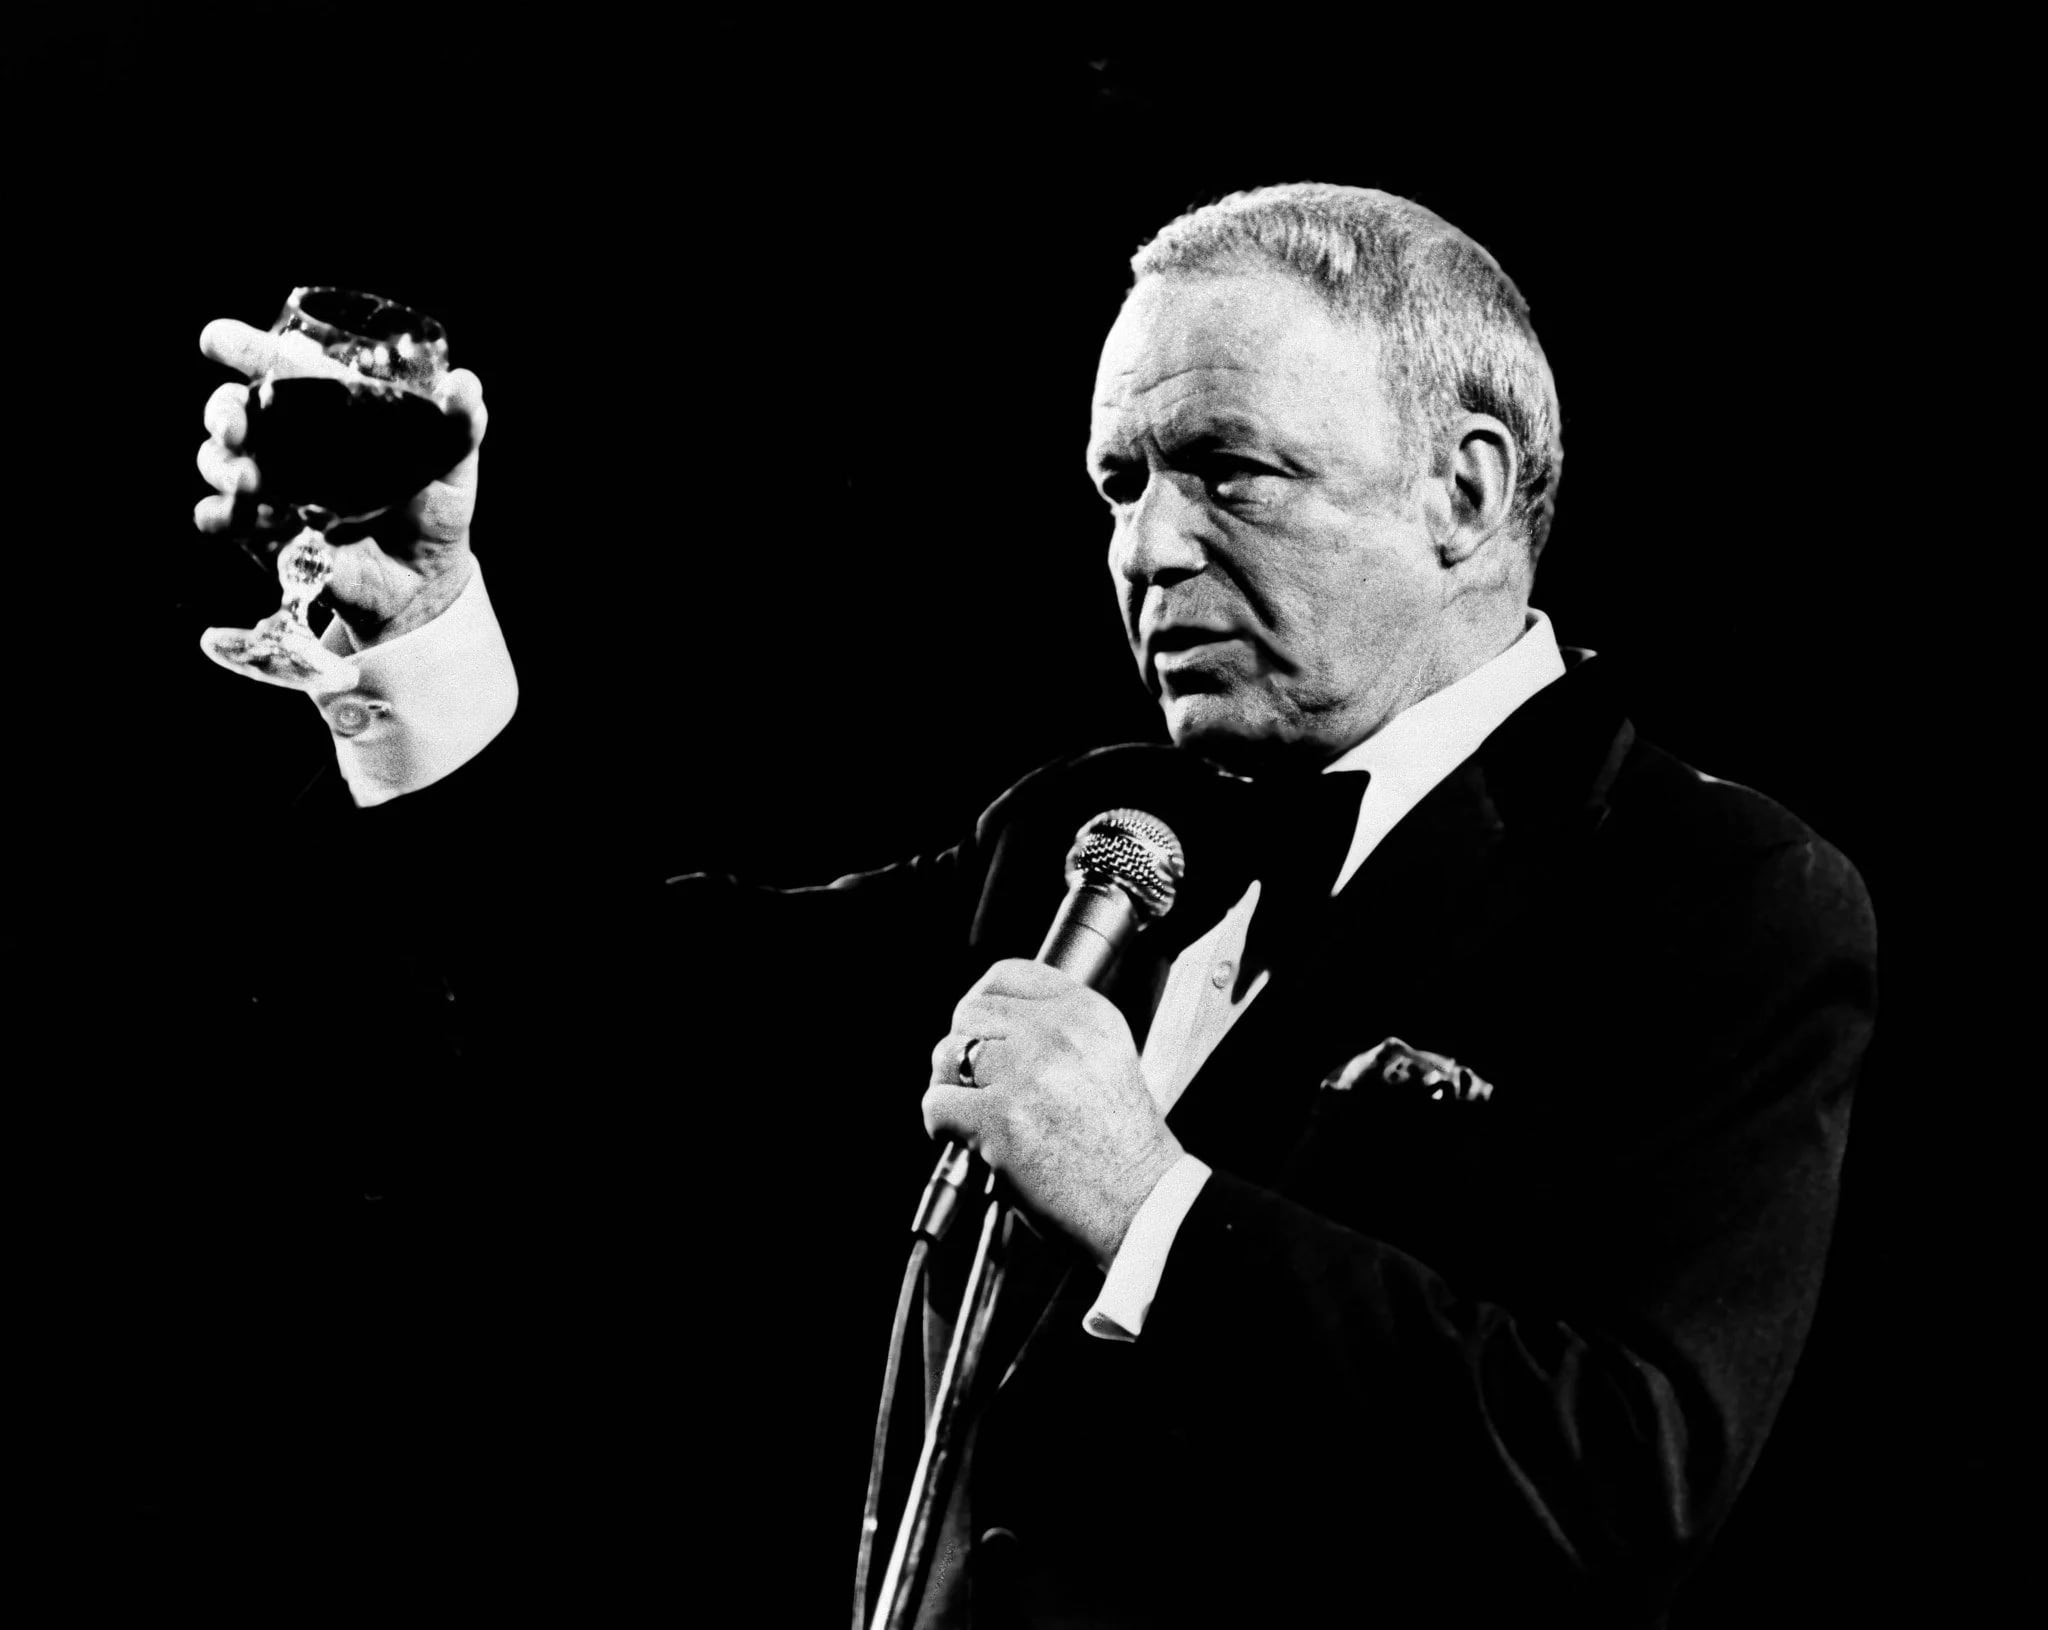 Sinatra tomando una copa durante uno de sus conciertos en Las Vegas